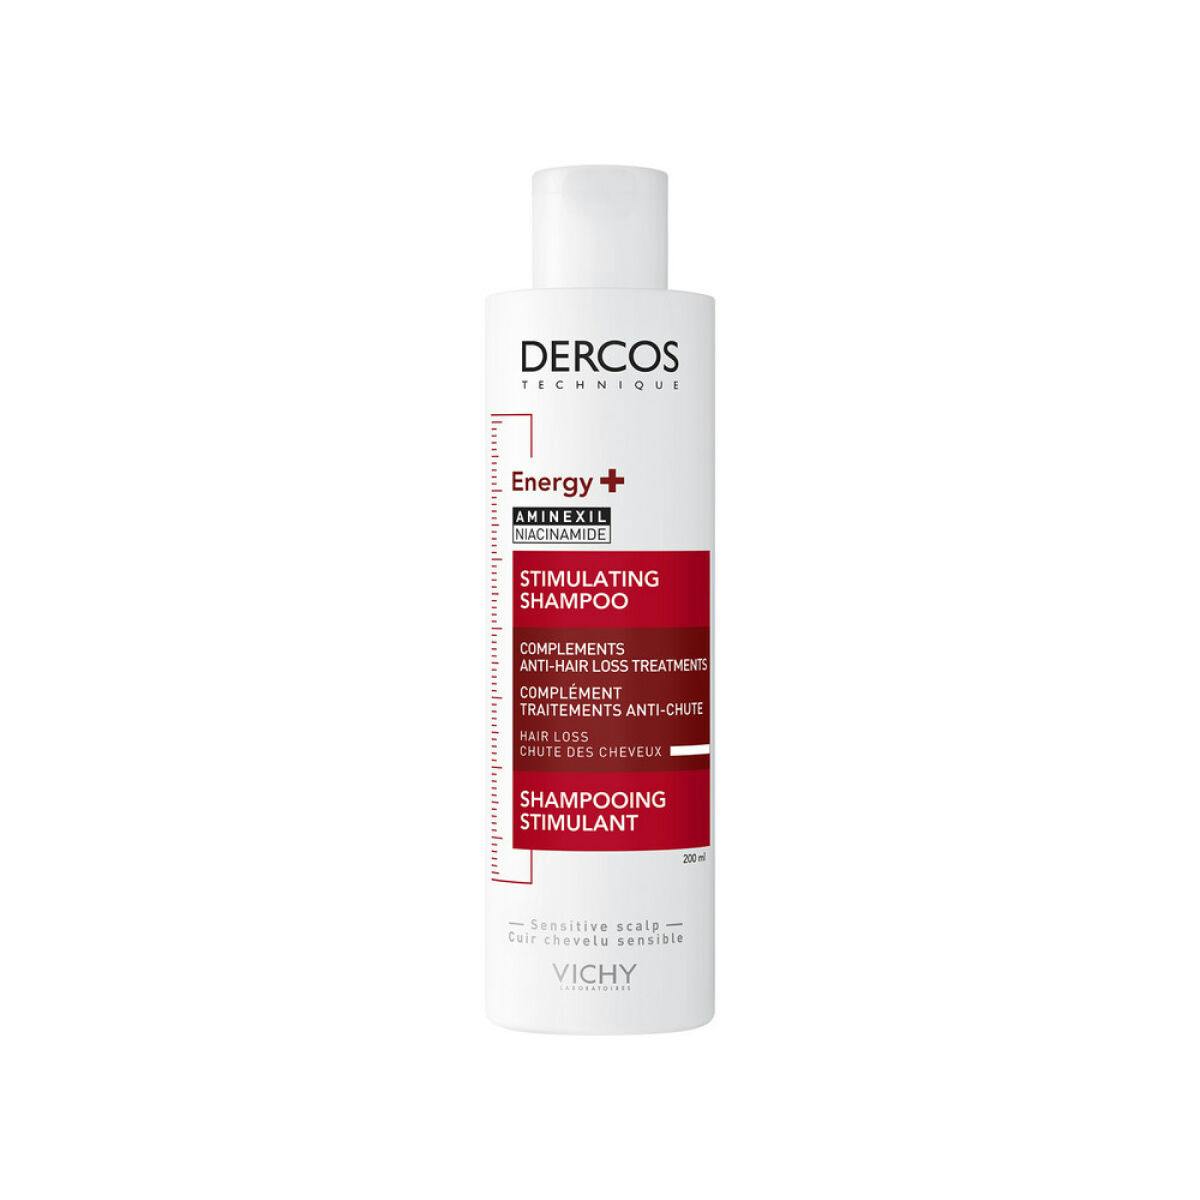 Vichy Dercos Energy+ Stimulating Shampoo Тонізувальний шампунь для боротьби з випаданням волосся